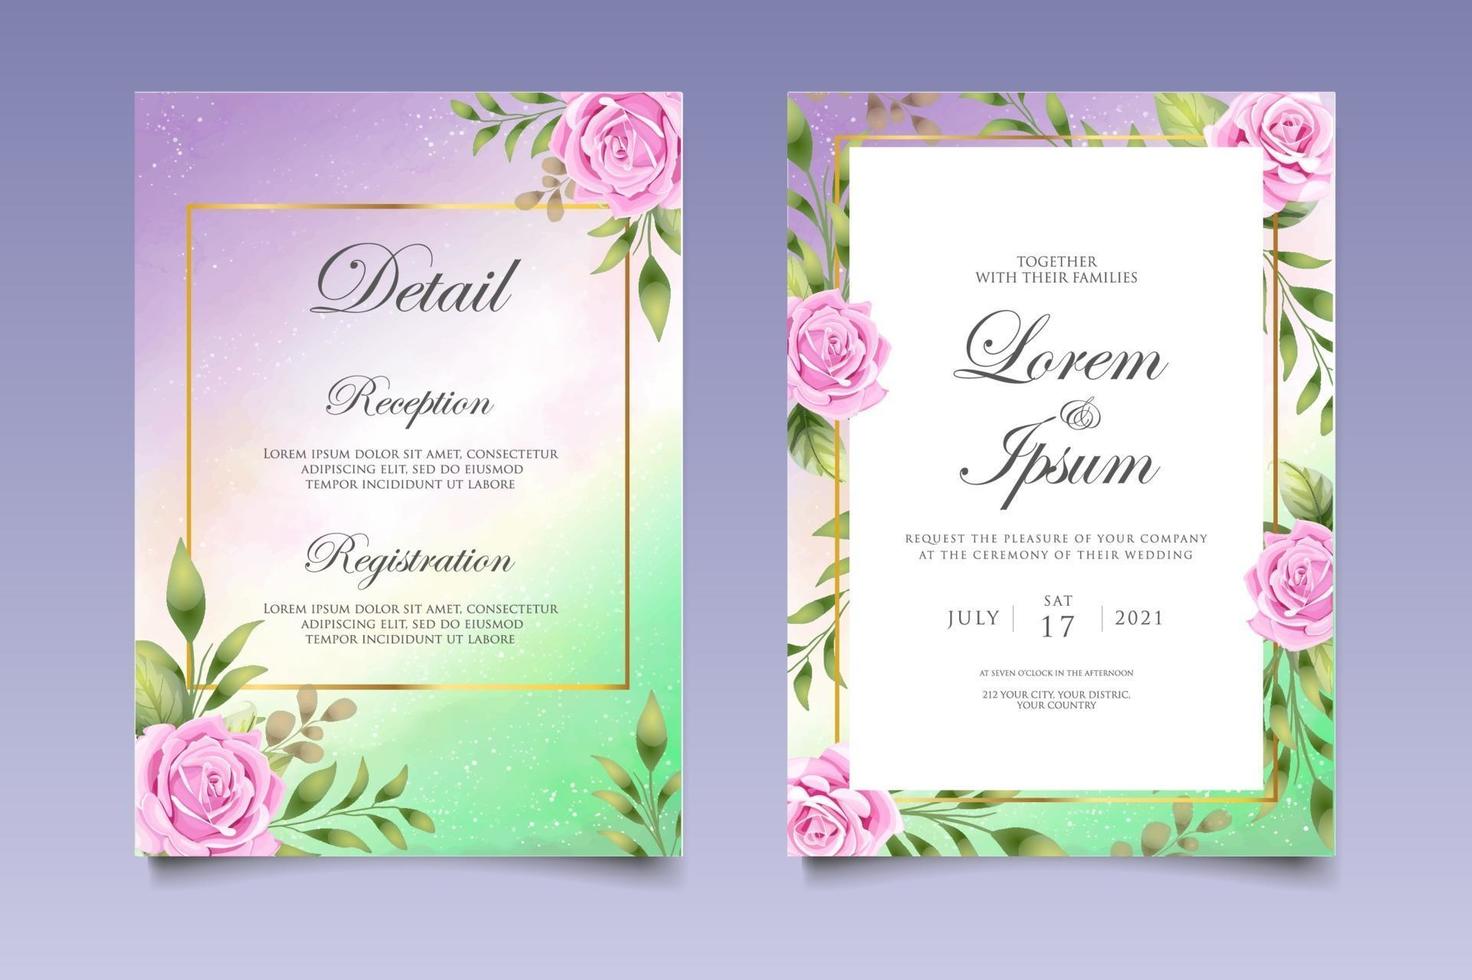 cartão de convite de casamento com lindas flores e folhas vetor